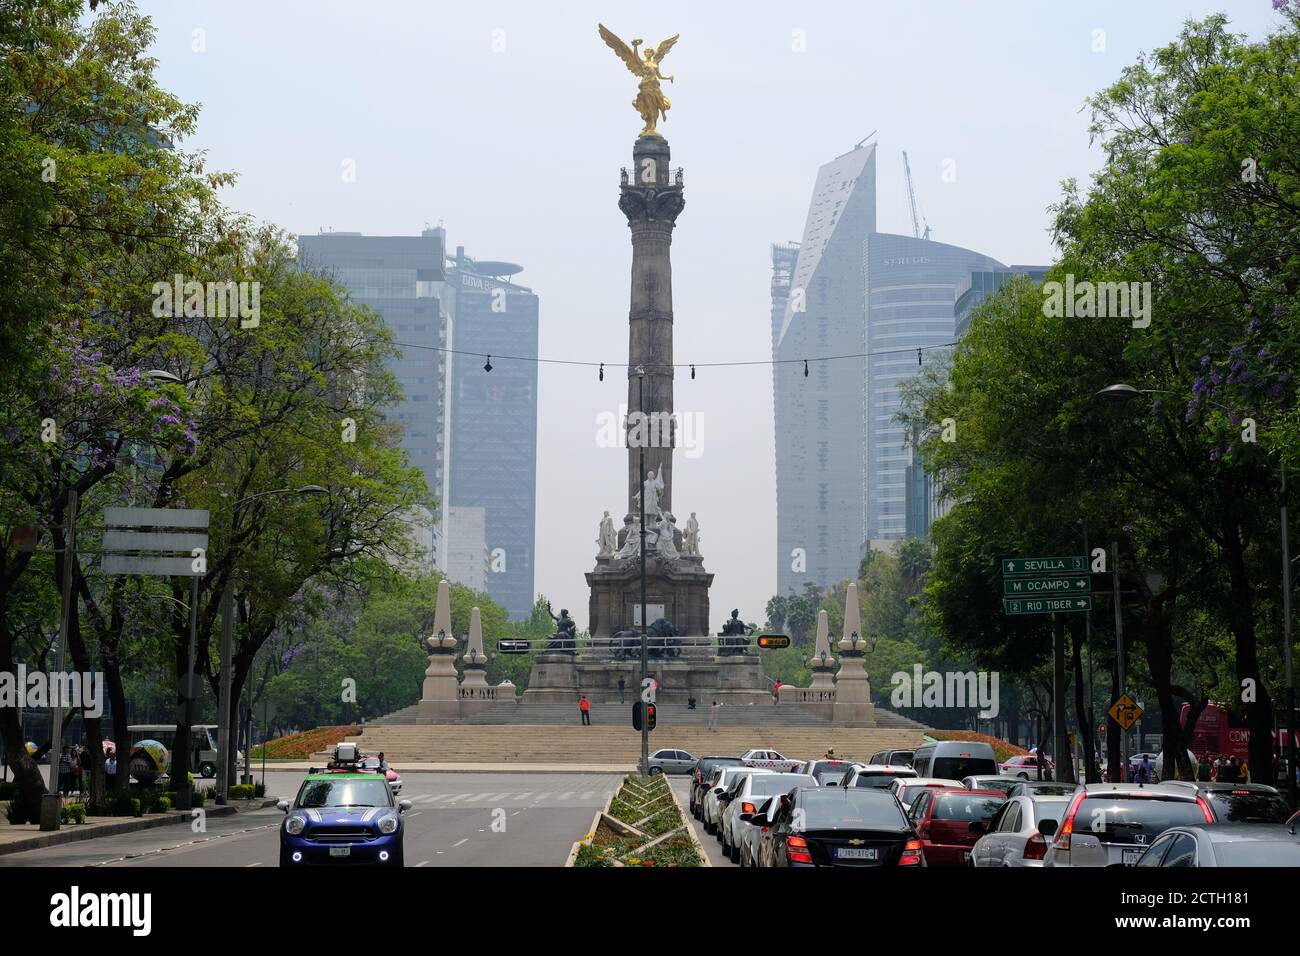 El Angel de la independencia tomado con drone luciendo su color oro con  reforma como fondo en la bella ciudad de mexico Stock Photo